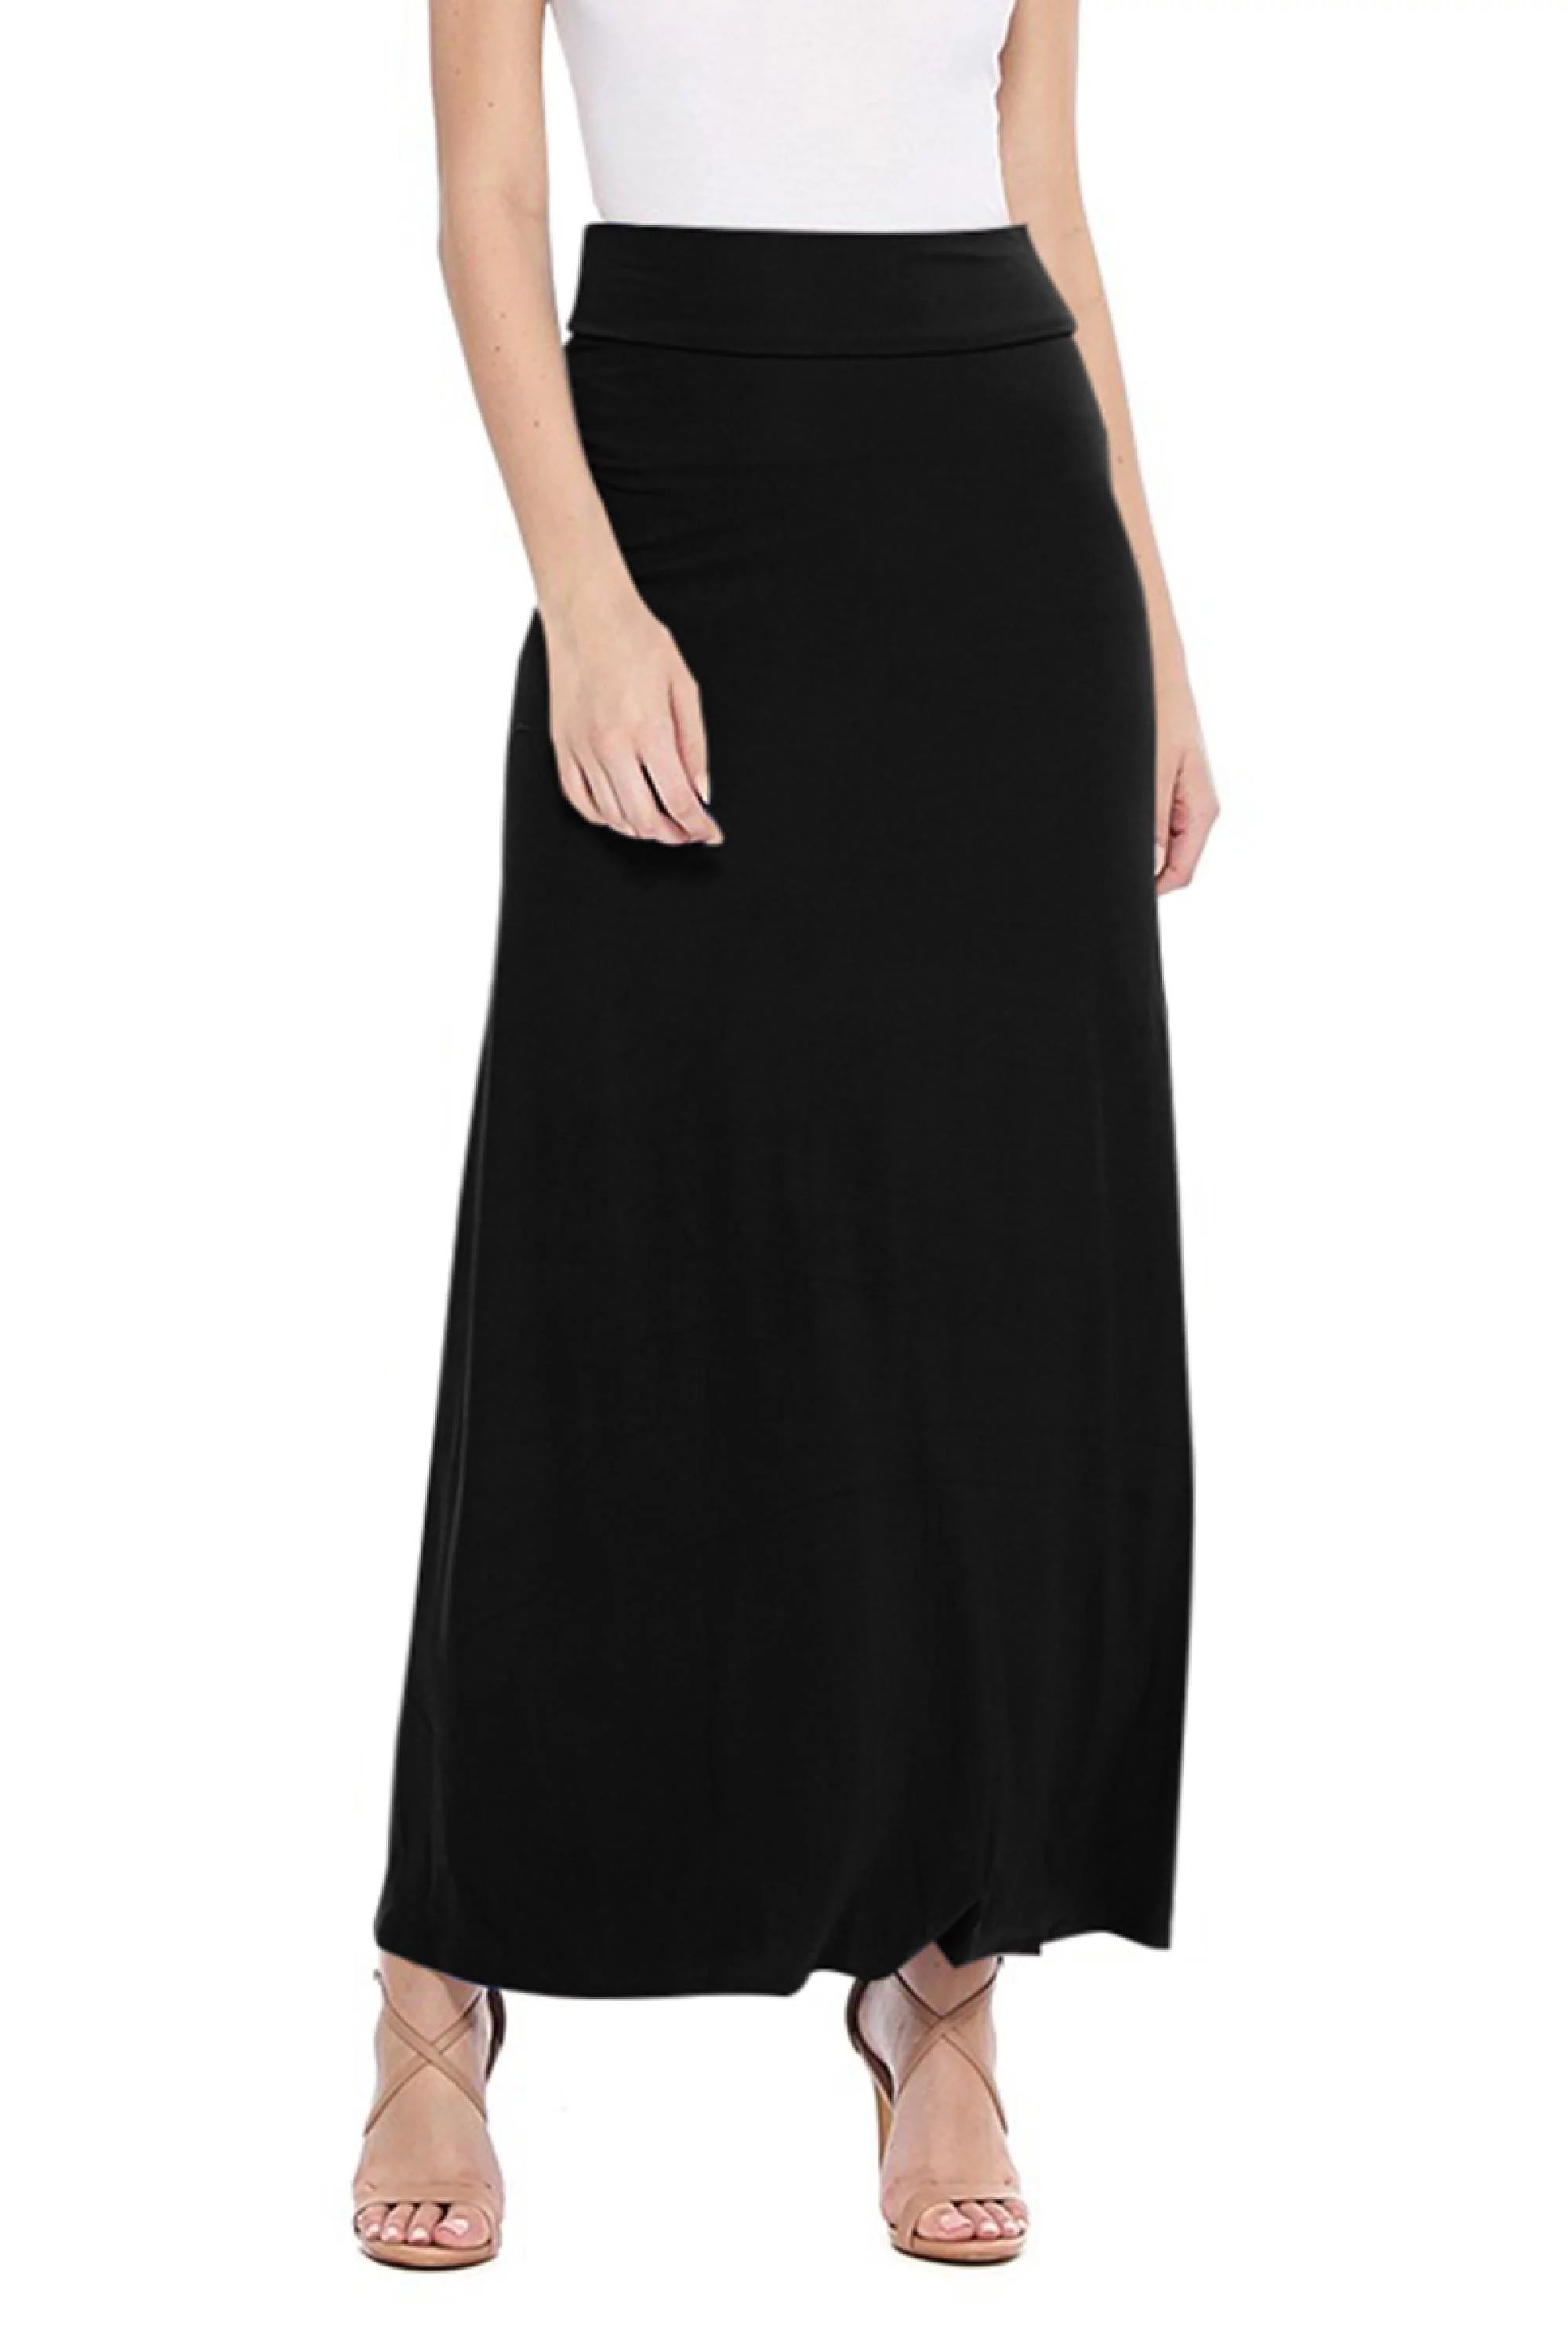 Women's Basic Casual High Waist Foldable Waistband Solid Maxi Skirt S-3XL - Walmart.com | Walmart (US)